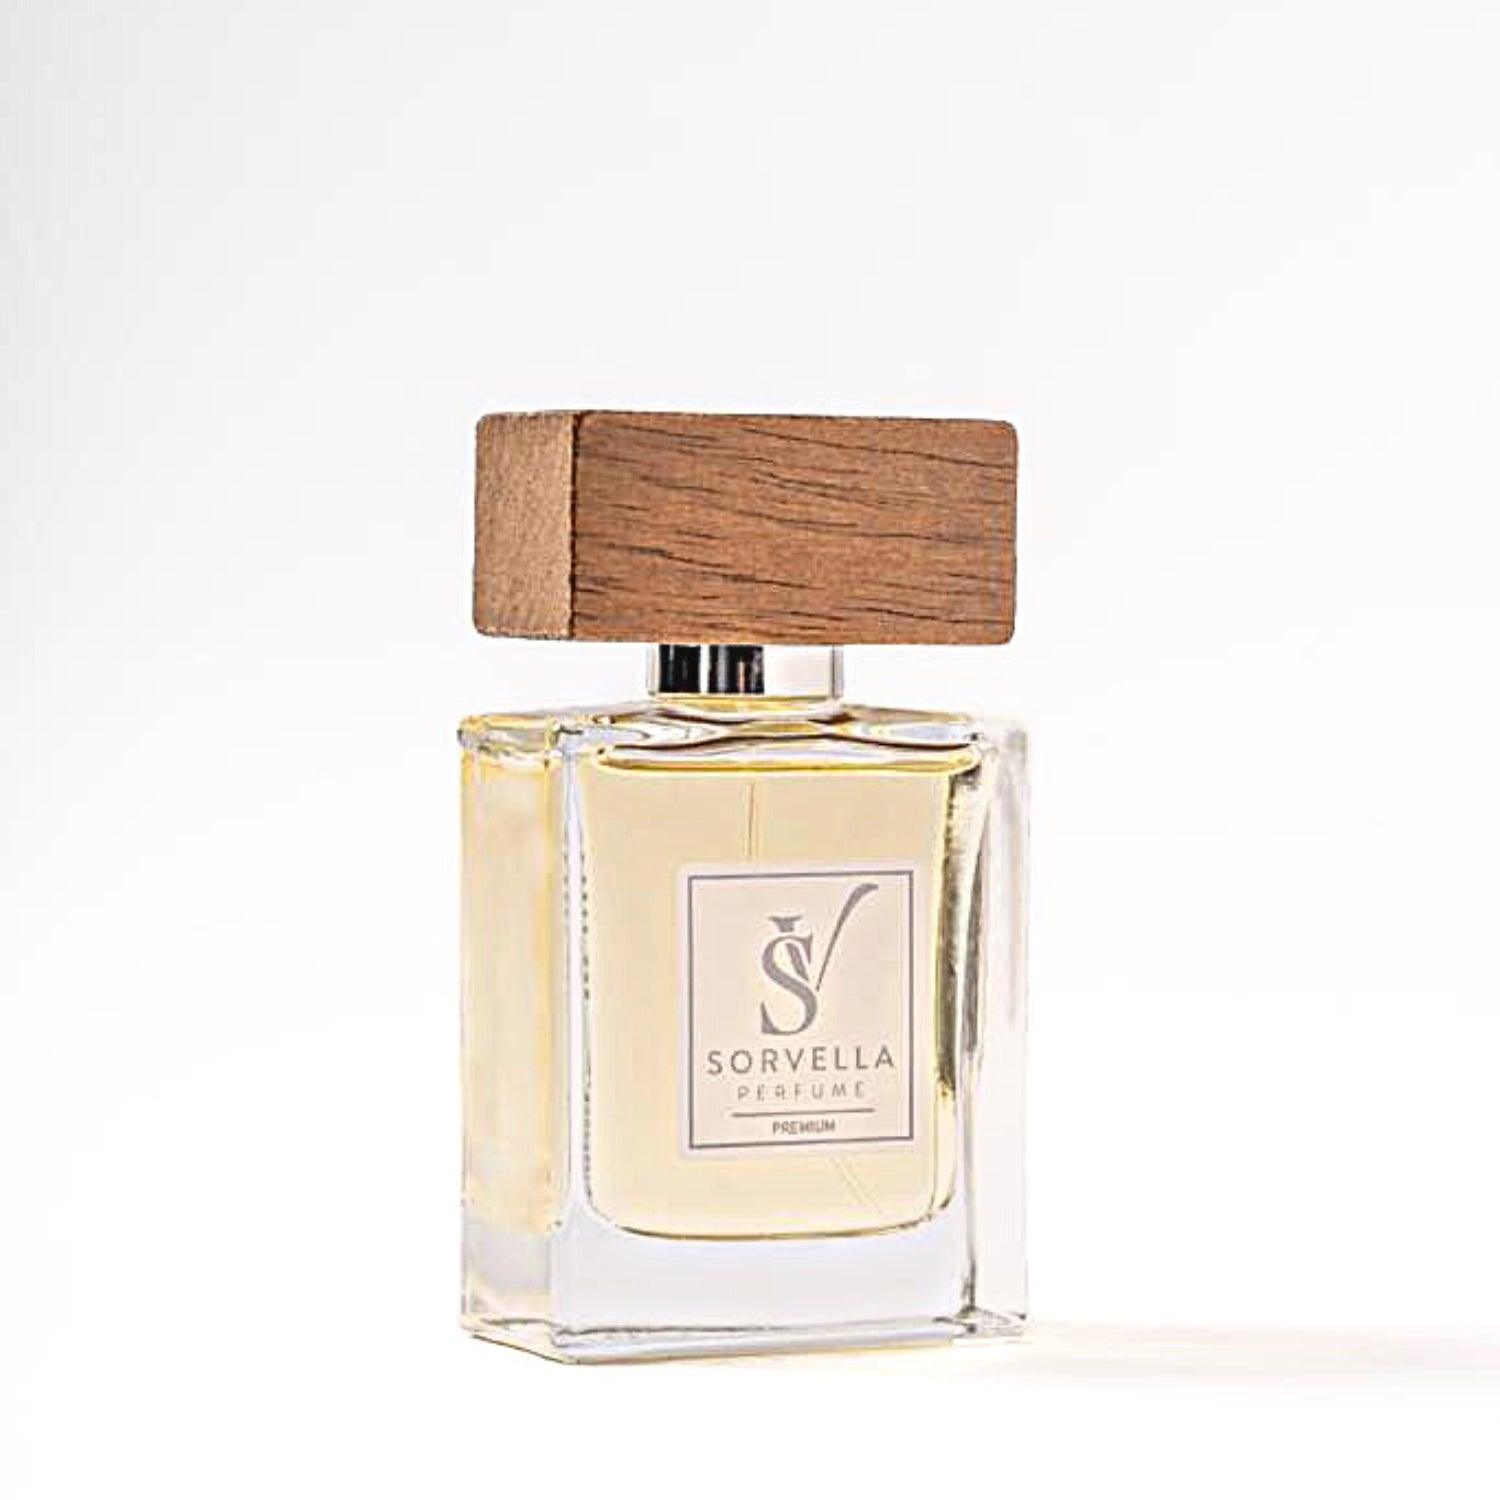 BAF - Perfumy Unisex Premium 50 ml - sorvellaperfume.pl